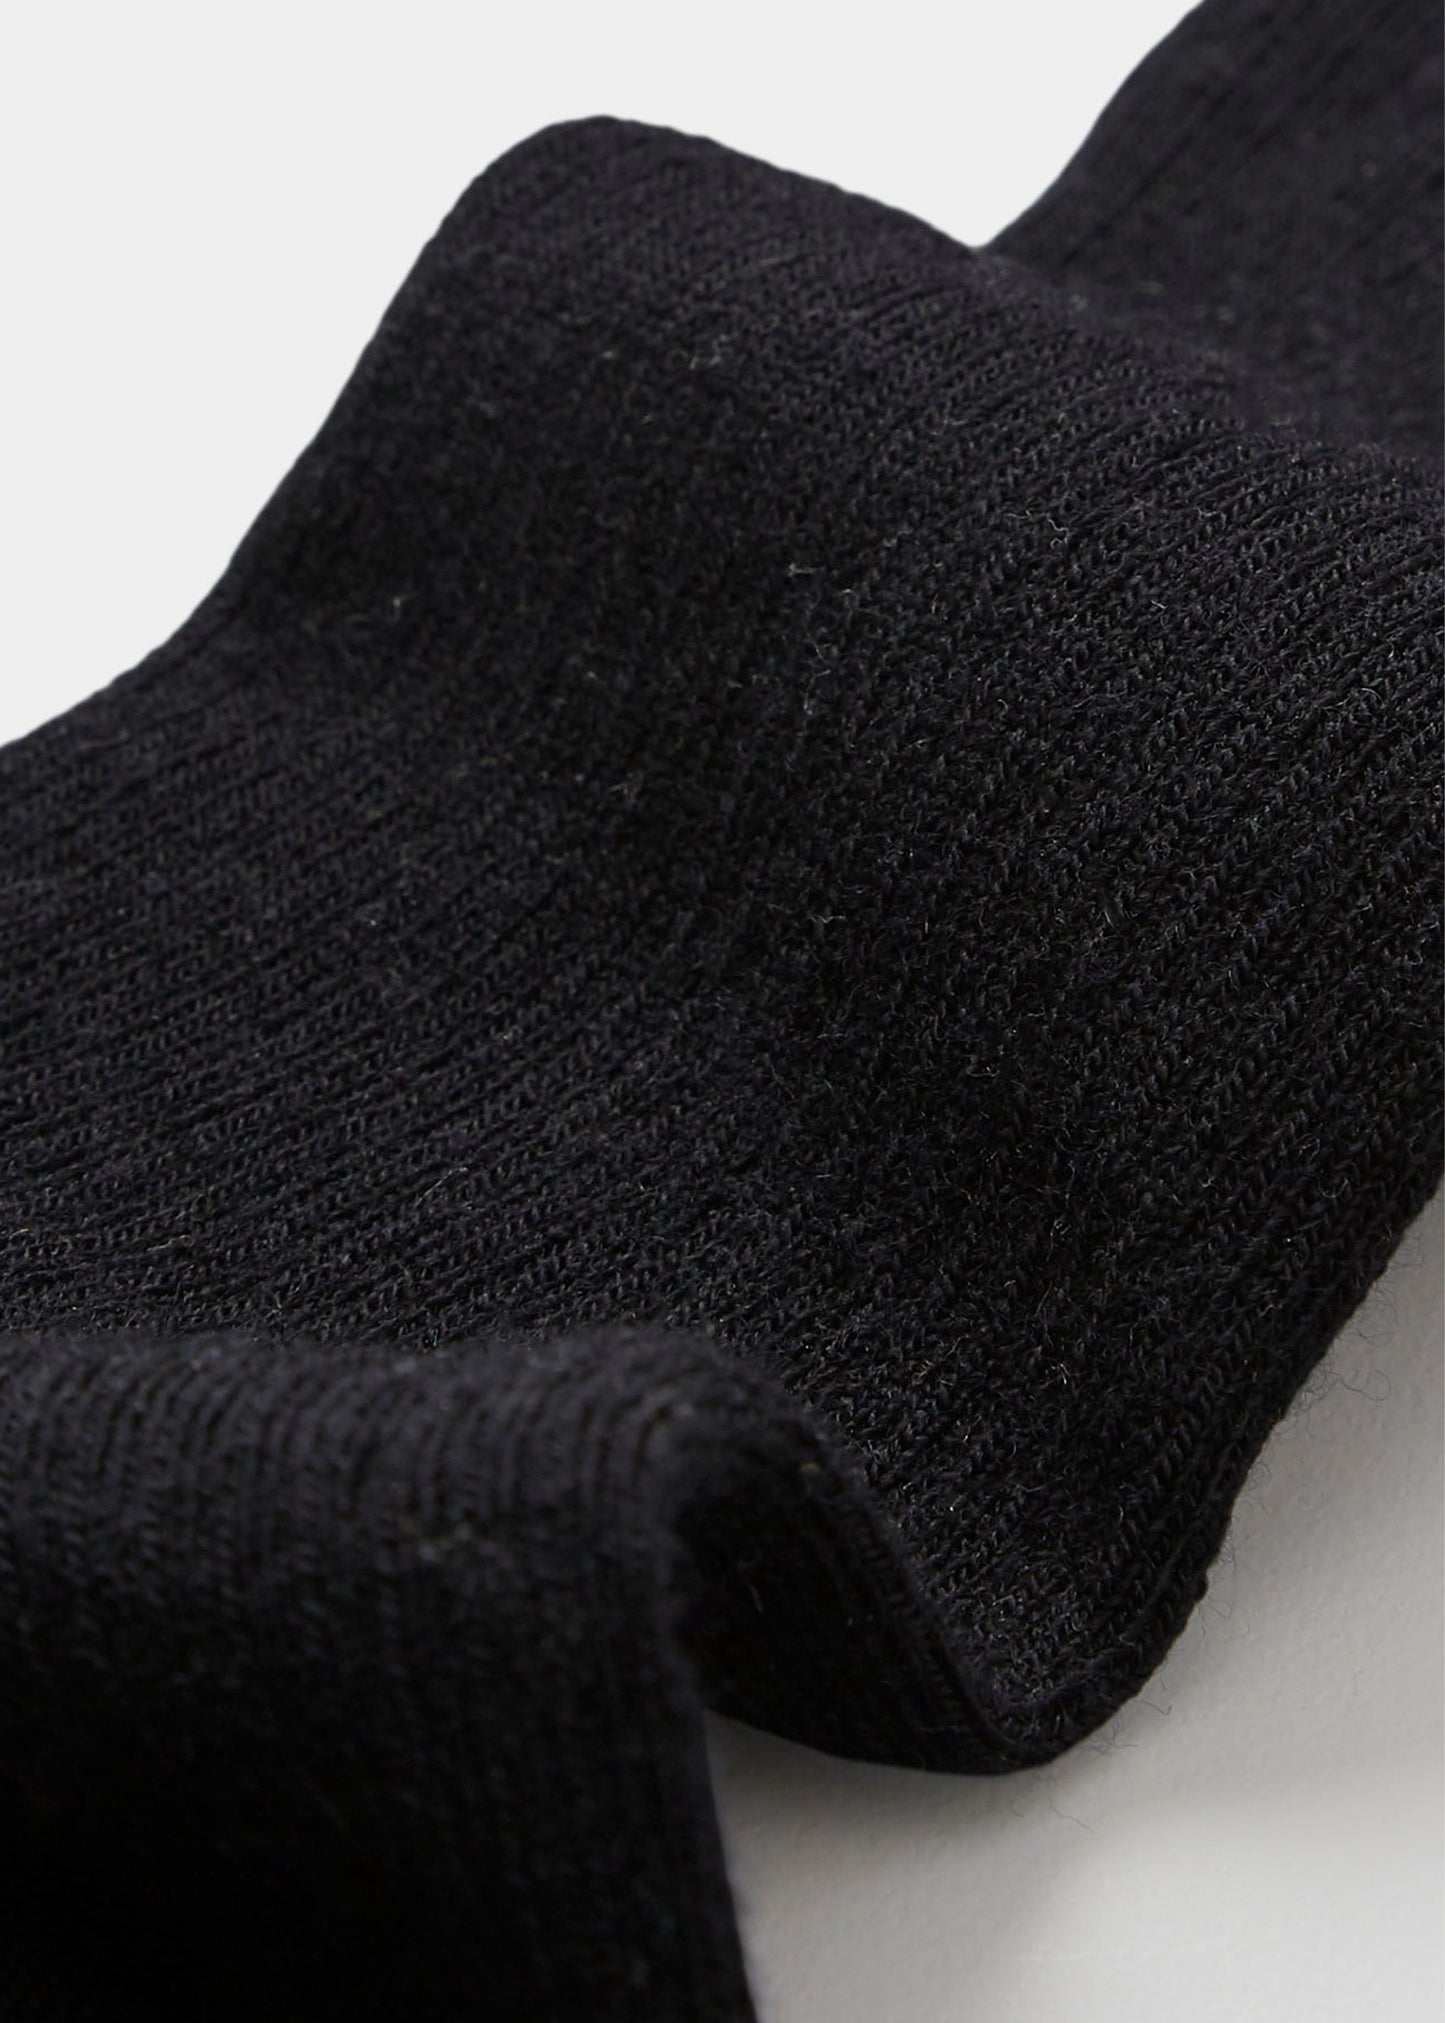 Aiayu "Wool Rib Socks" Black